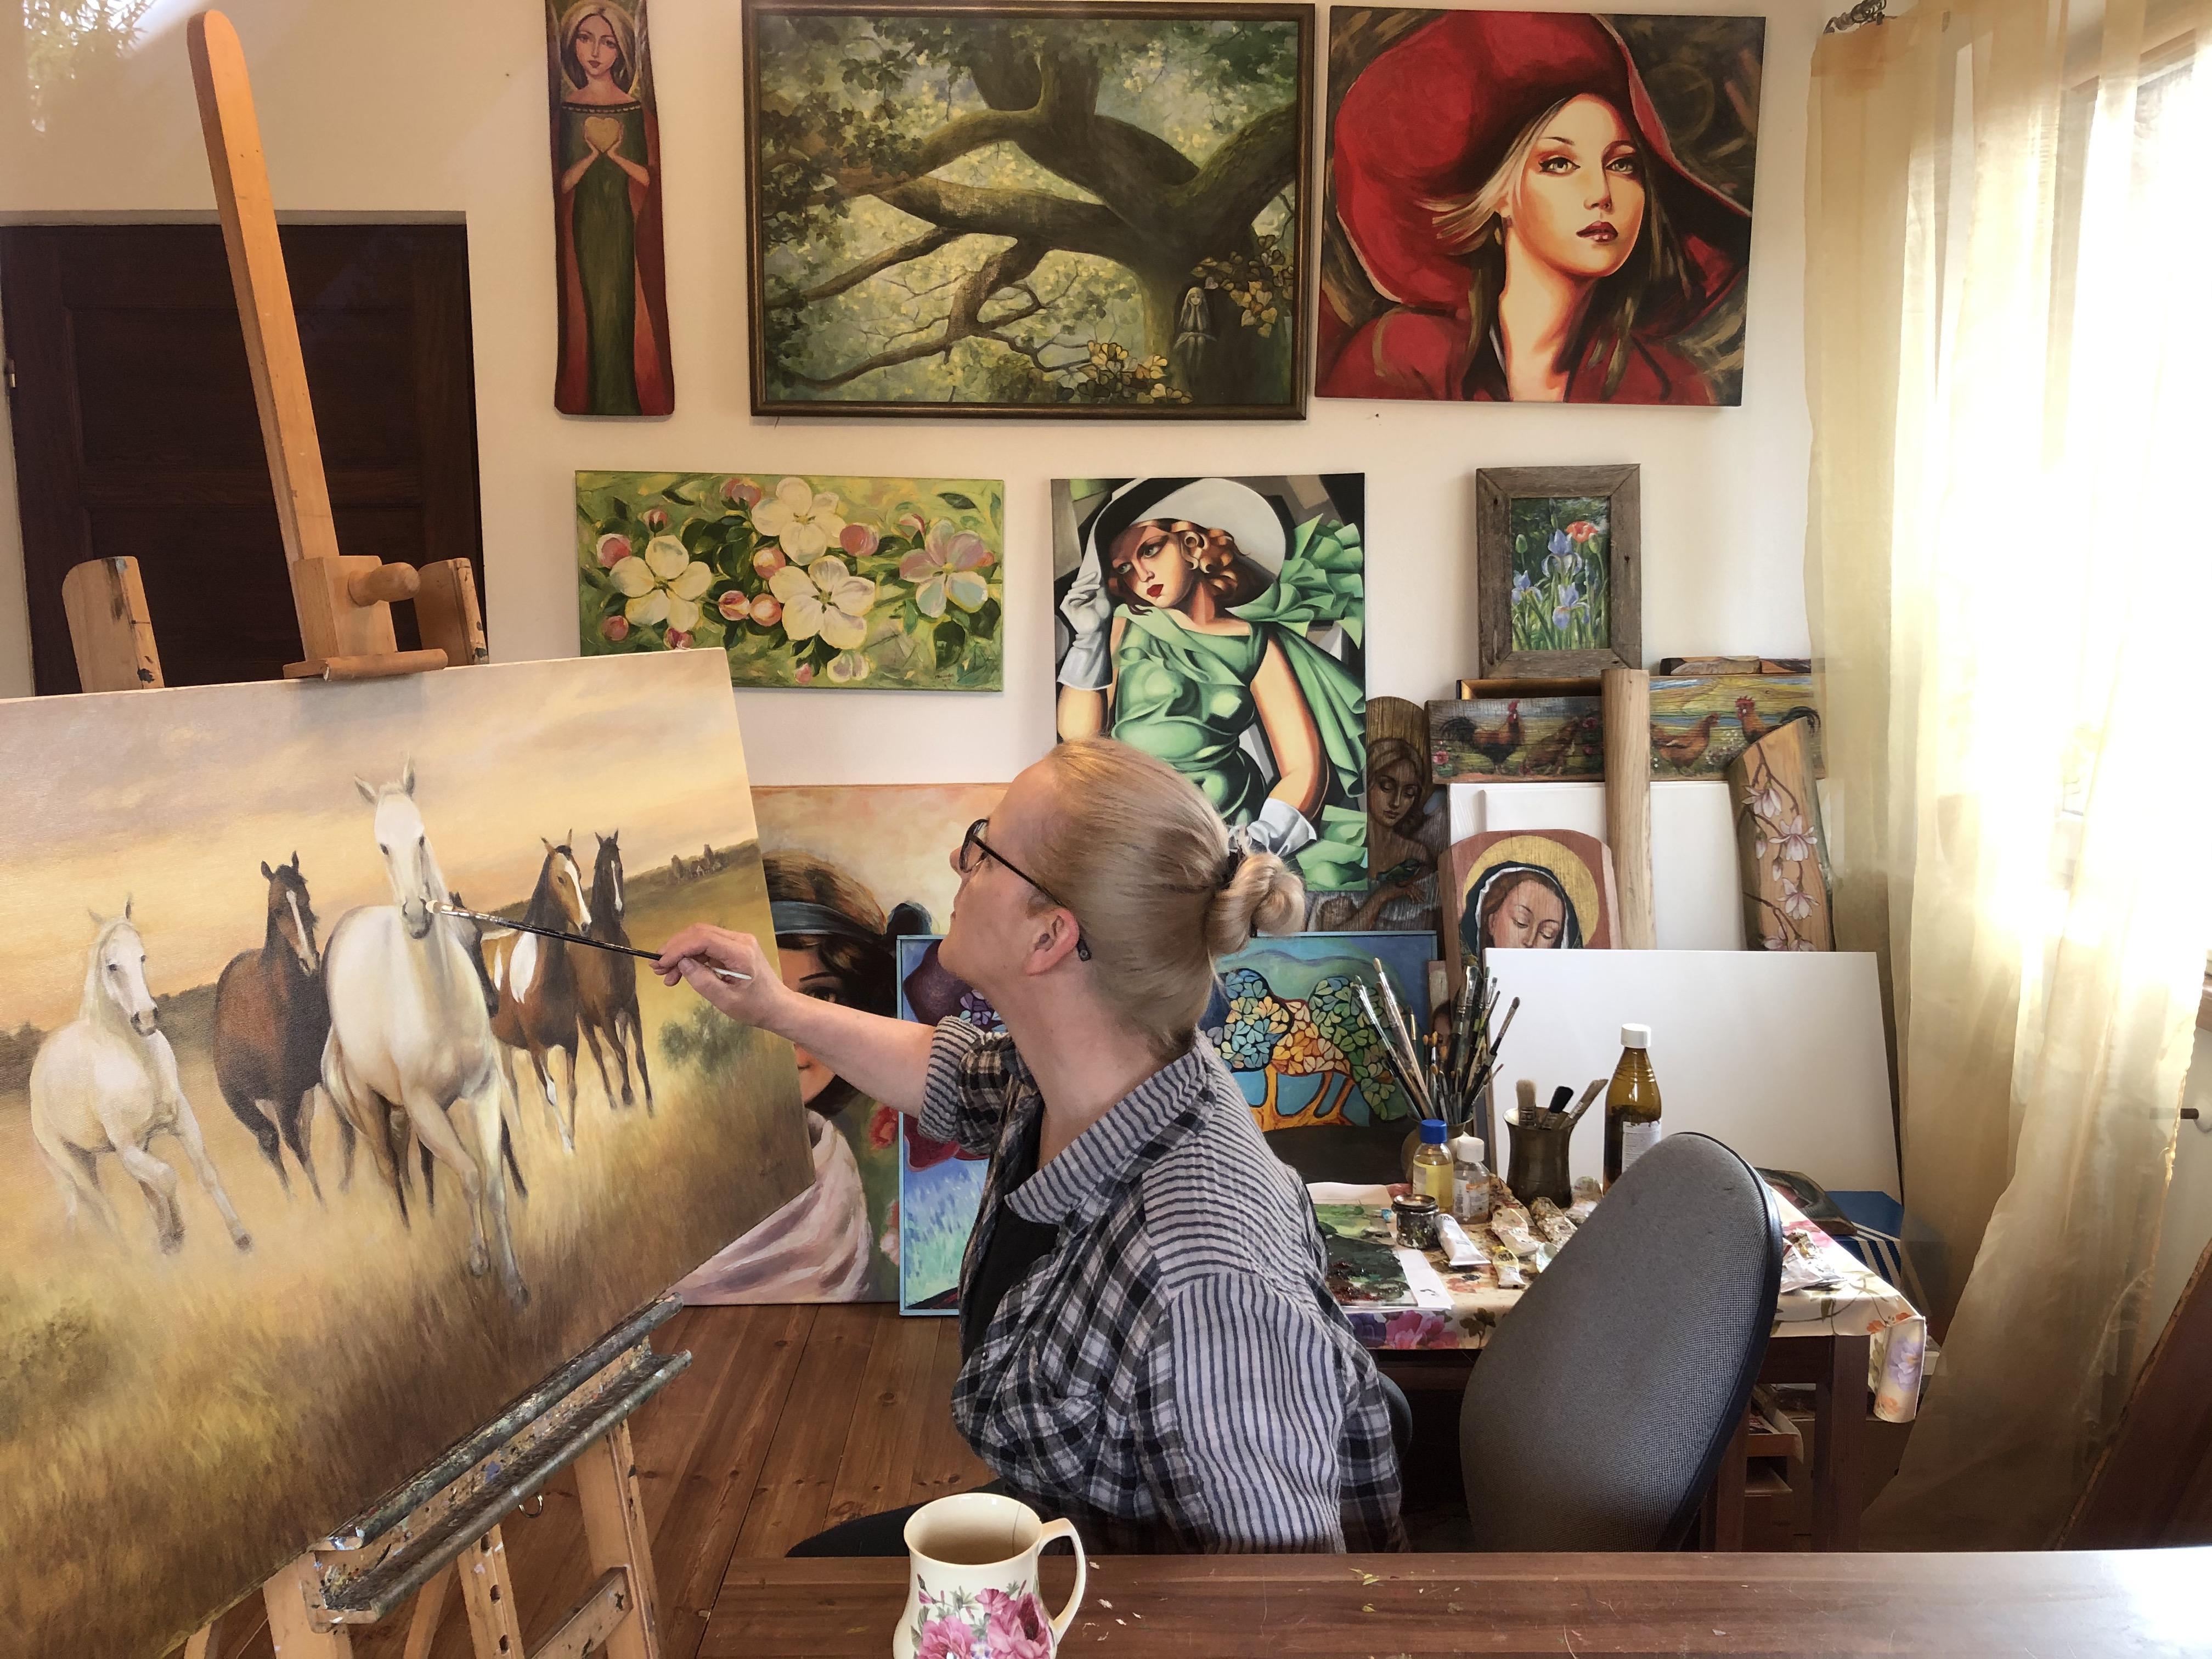 Ilustracja 1: Malarka w swojej pracowni maluje obraz stado koni.